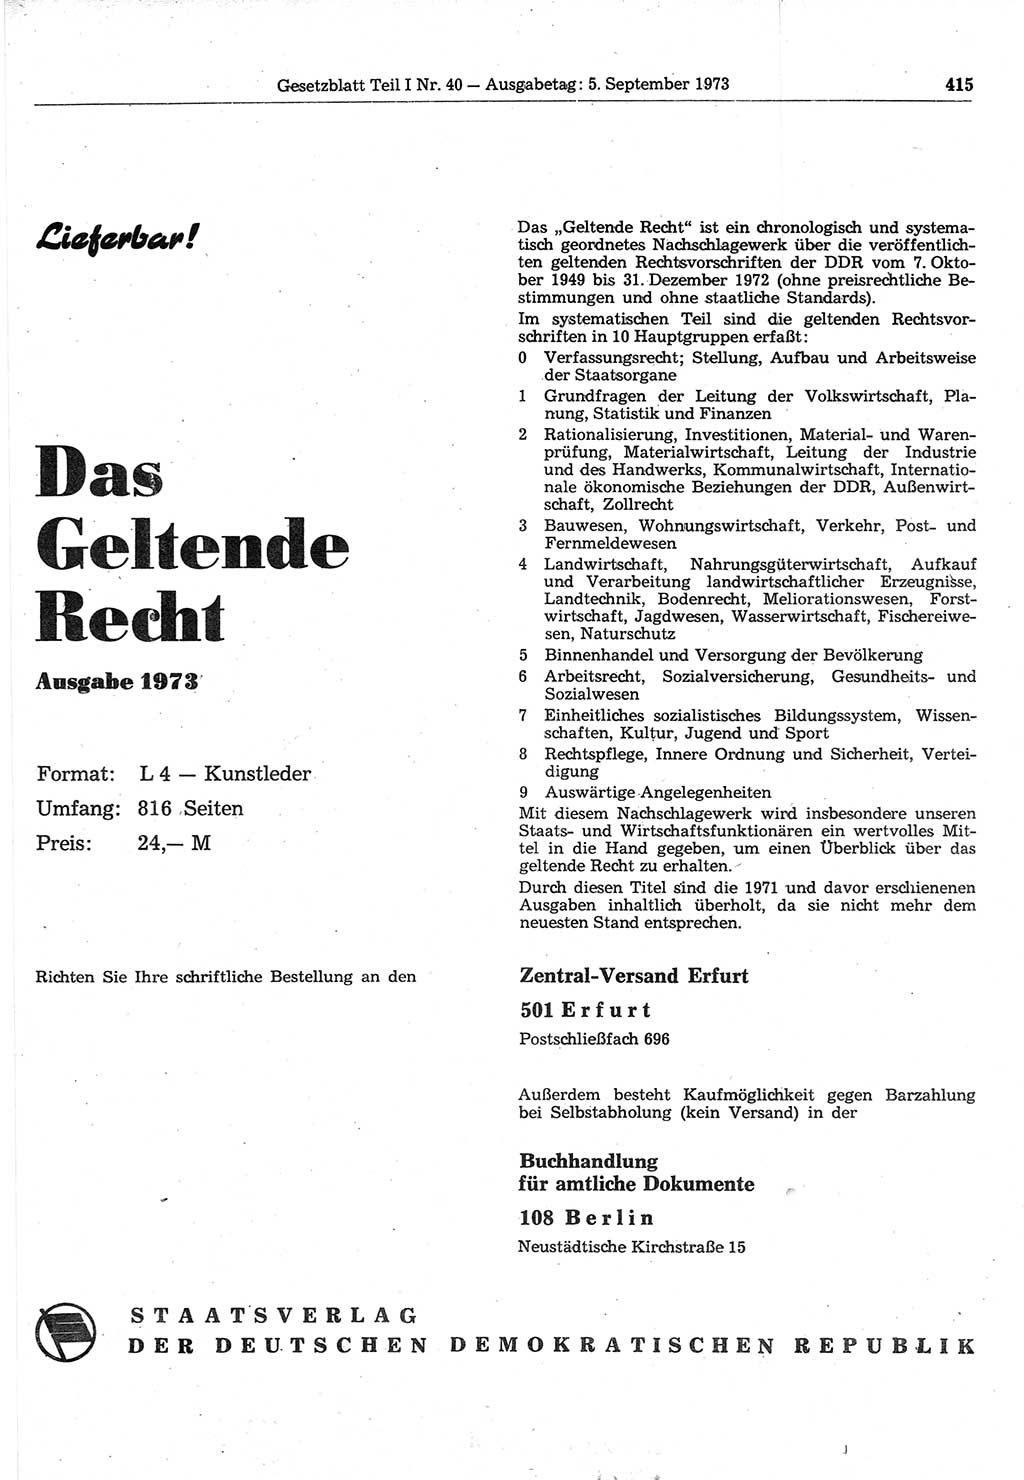 Gesetzblatt (GBl.) der Deutschen Demokratischen Republik (DDR) Teil Ⅰ 1973, Seite 415 (GBl. DDR Ⅰ 1973, S. 415)